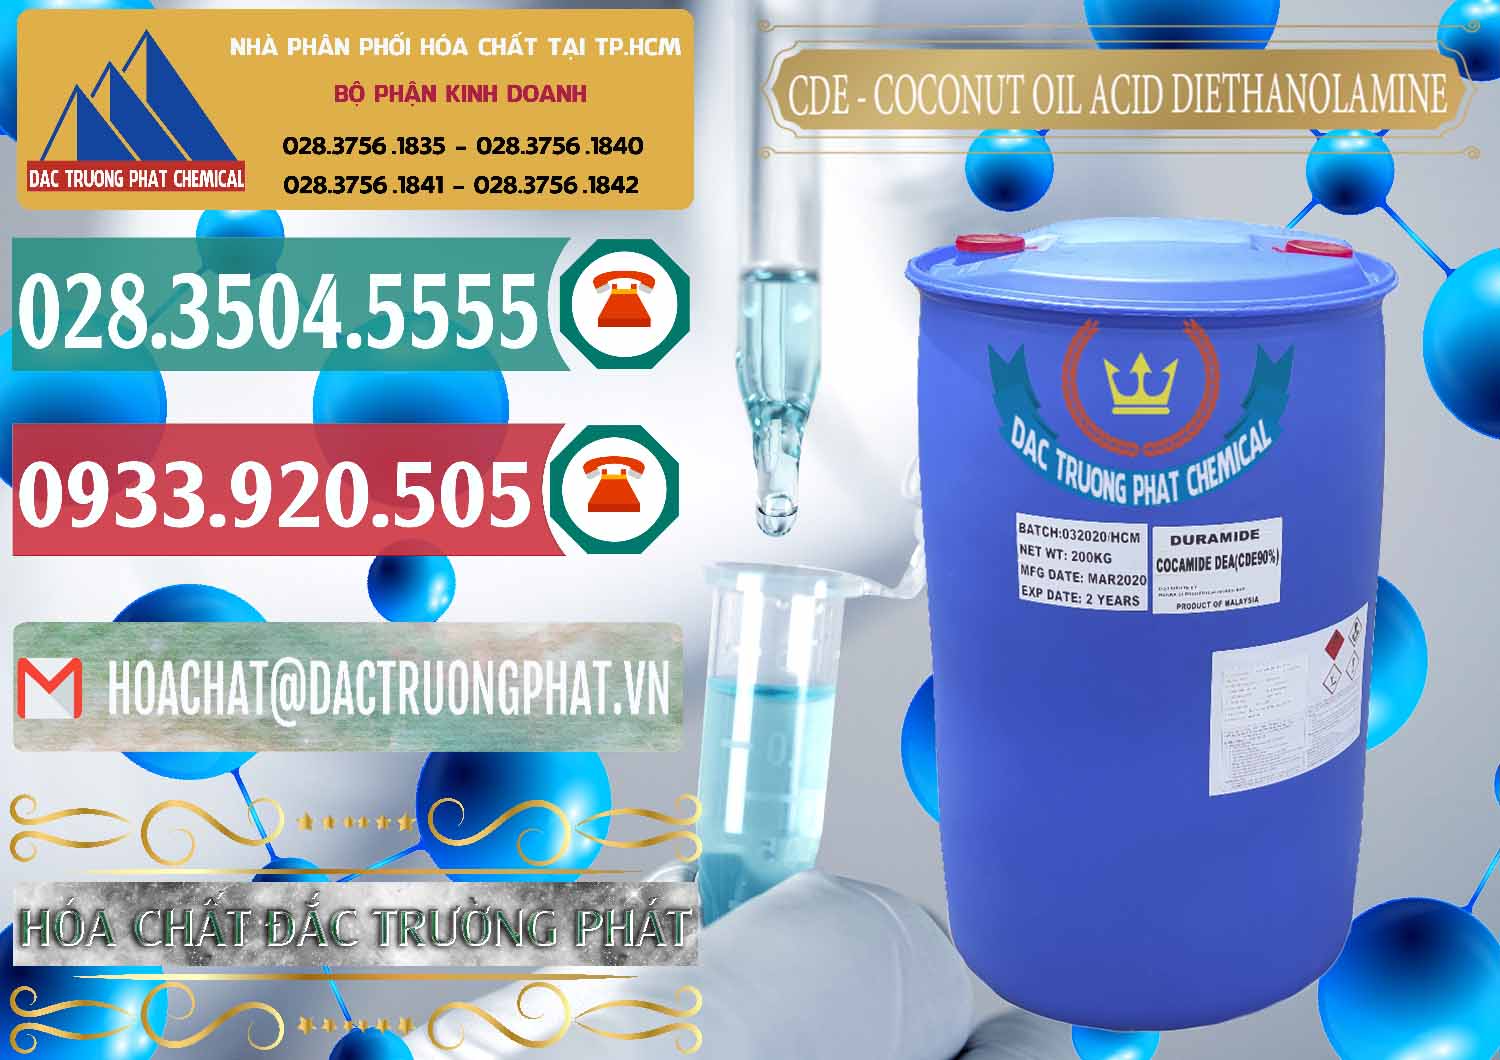 Nơi phân phối & bán CDE - Coconut Oil Acid Diethanolamine Mã Lai Malaysia - 0311 - Cung cấp - nhập khẩu hóa chất tại TP.HCM - muabanhoachat.vn